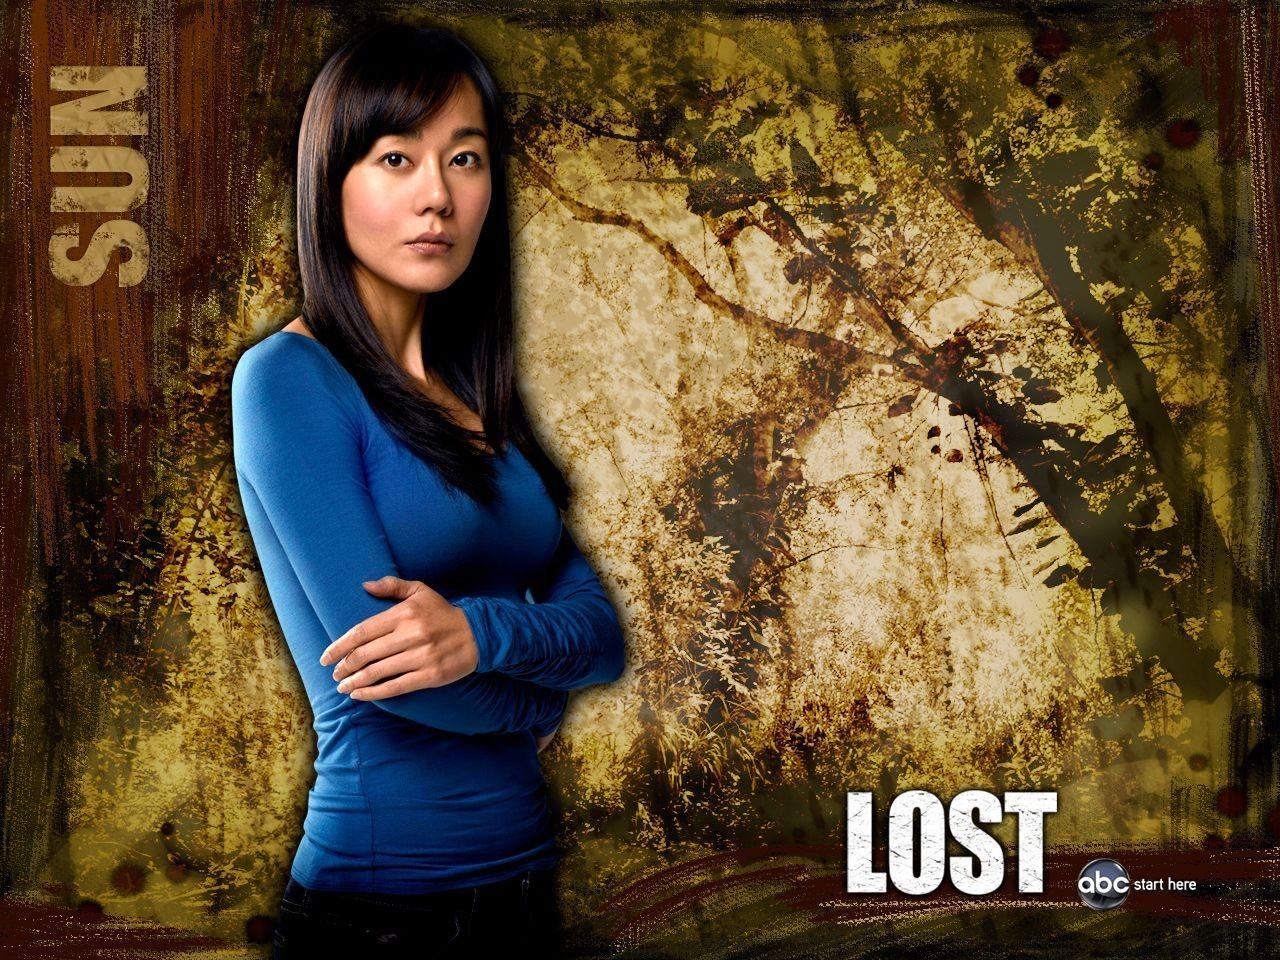 Un wallpaper della serie tv Lost con Yunjin Kim, interprete di Sun